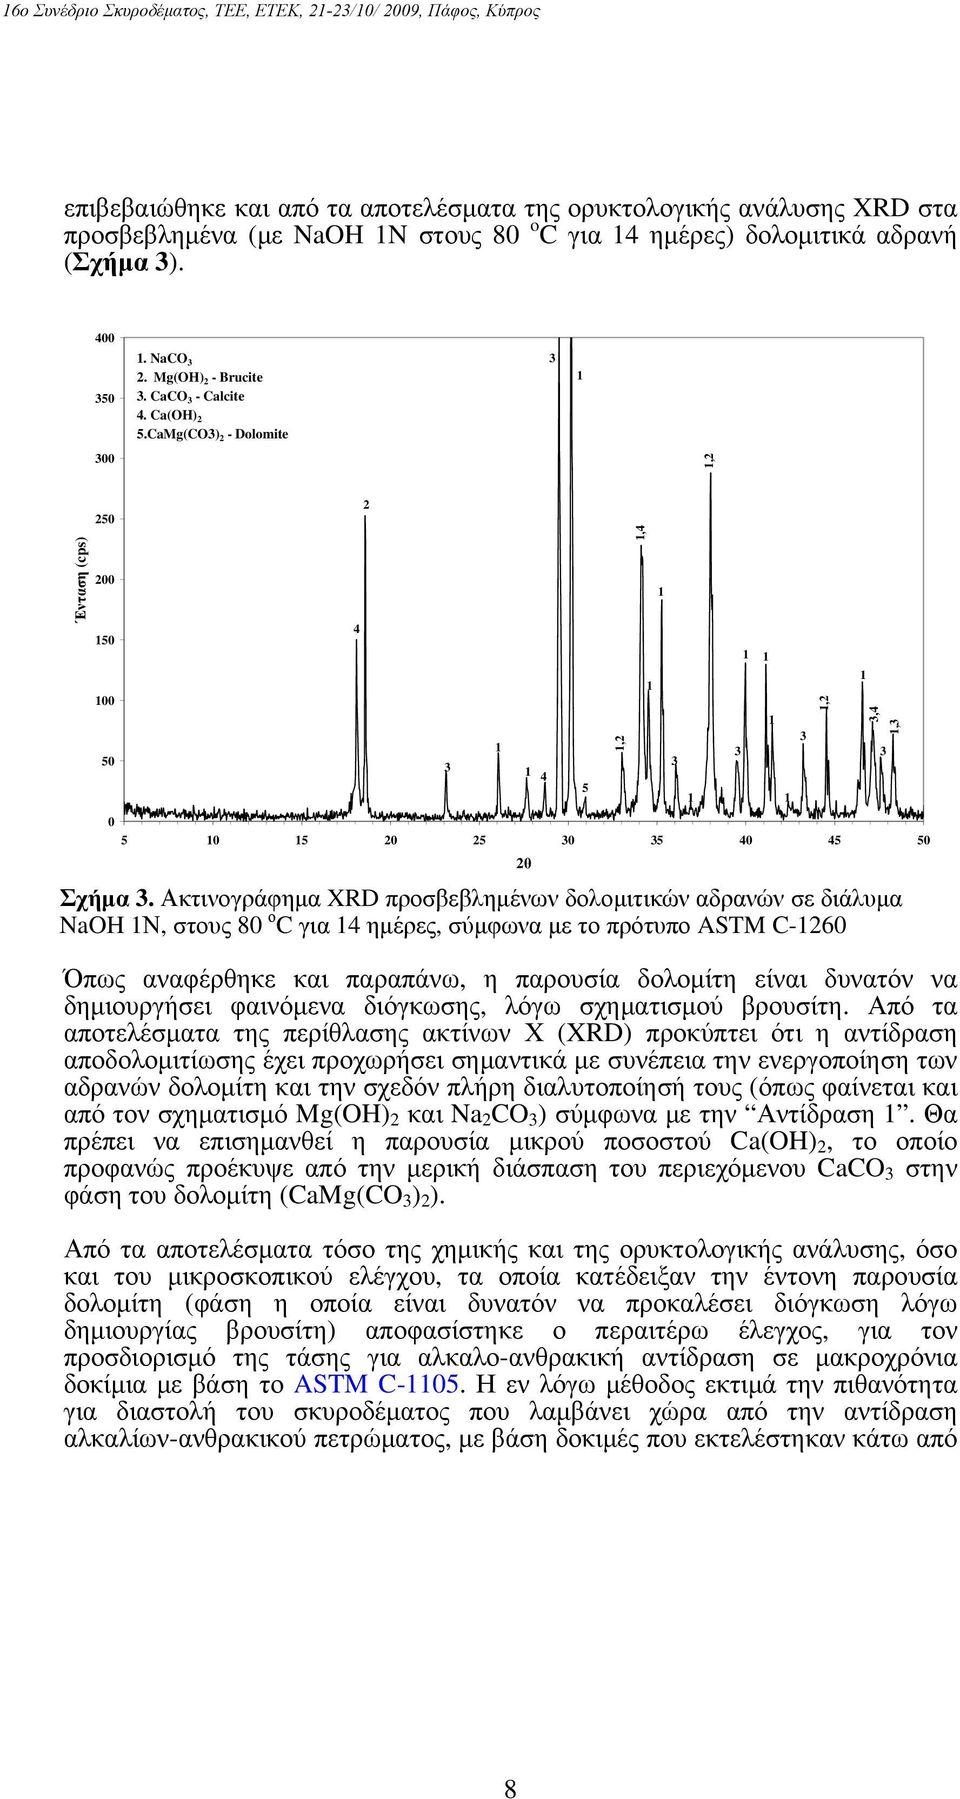 Ακτινογράφημα XRD προσβεβλημένων δολομιτικών αδρανών σε διάλυμα NaOH Ν, στους 80 ο C για 4 ημέρες, σύμφωνα με το πρότυπο ASTM C-260 Όπως αναφέρθηκε και παραπάνω, η παρουσία δολομίτη είναι δυνατόν να